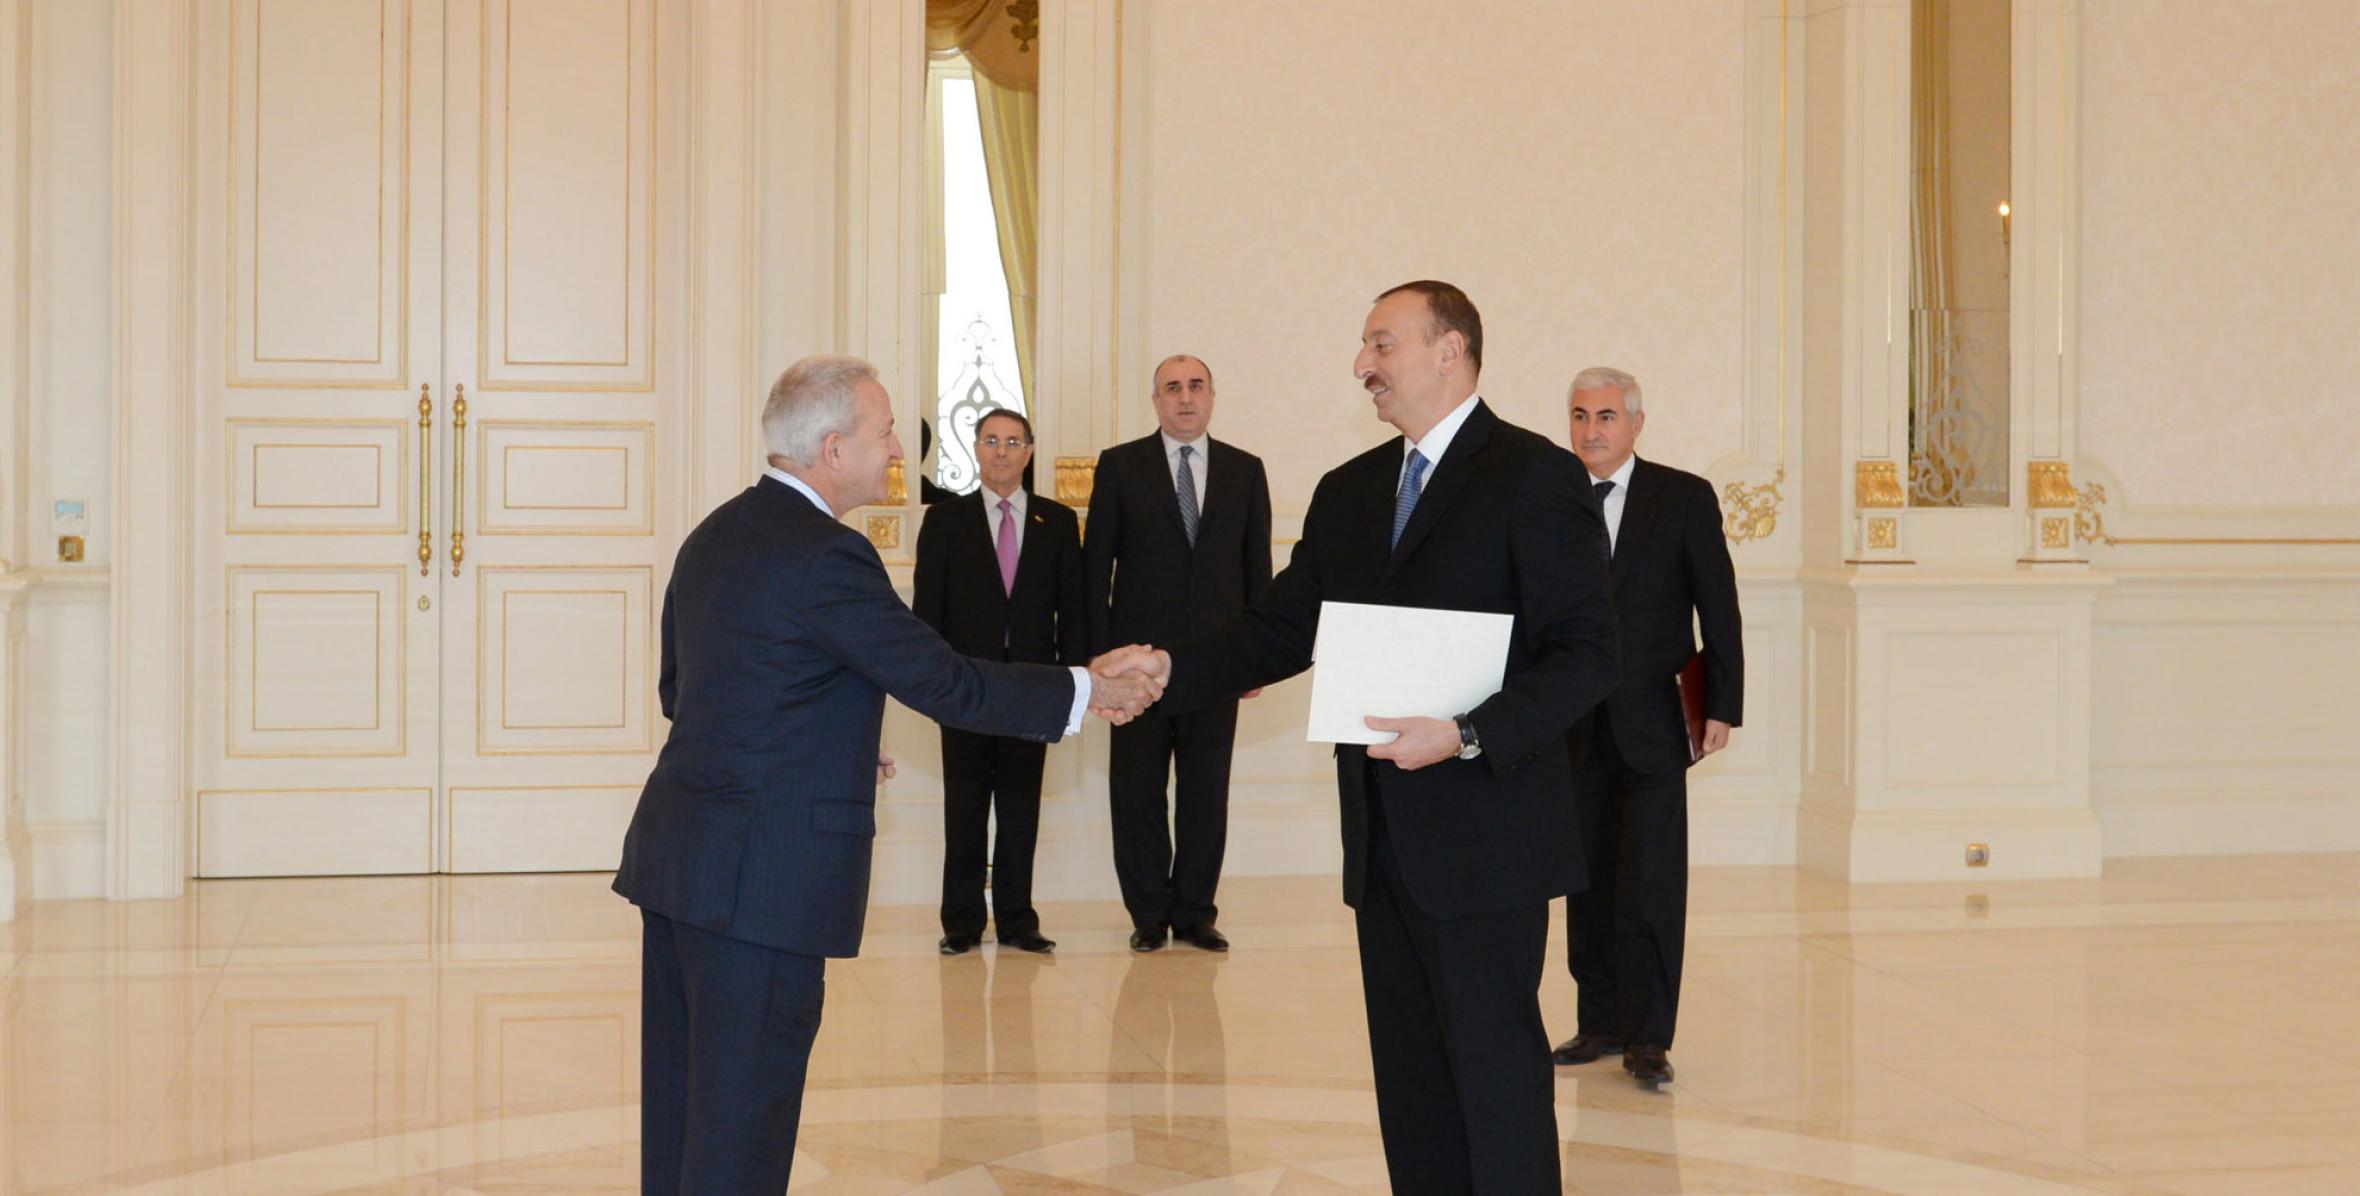 Ильхам Алиев принял верительные грамоты новоназначенного посла Ирландии в Азербайджане